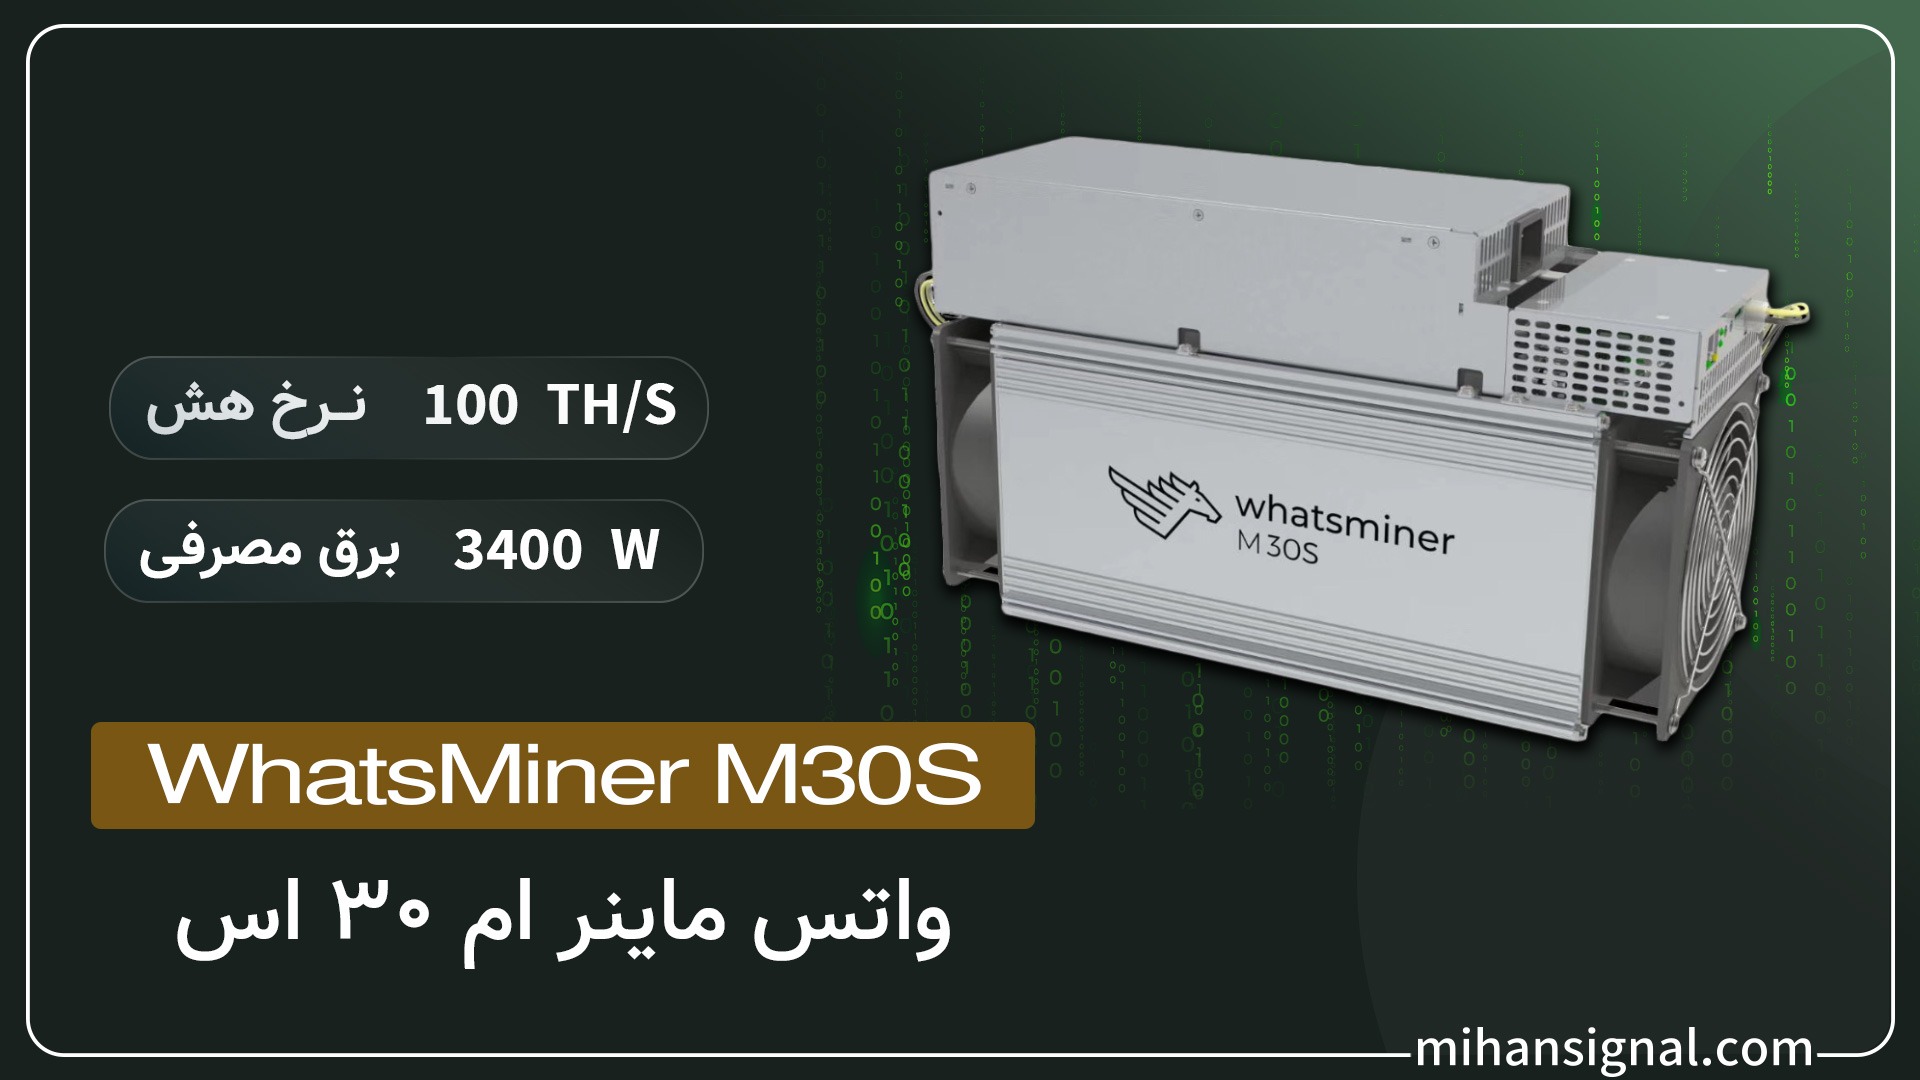 Whatsminer M30s